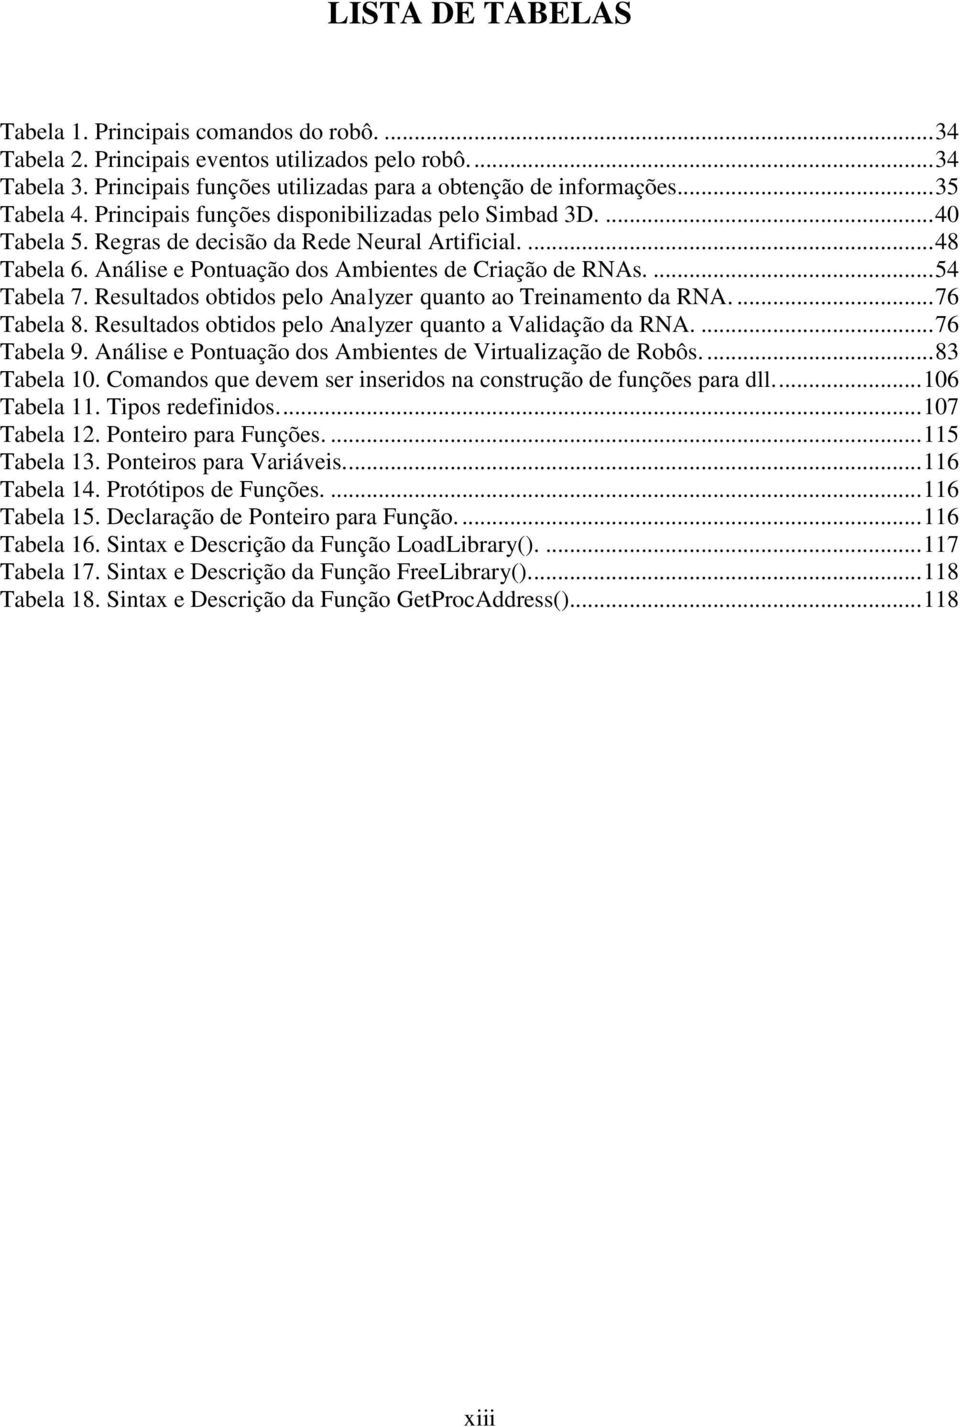 Resultados obtidos pelo Analyzer quanto ao Treinamento da RNA....76 Tabela 8. Resultados obtidos pelo Analyzer quanto a Validação da RNA....76 Tabela 9.